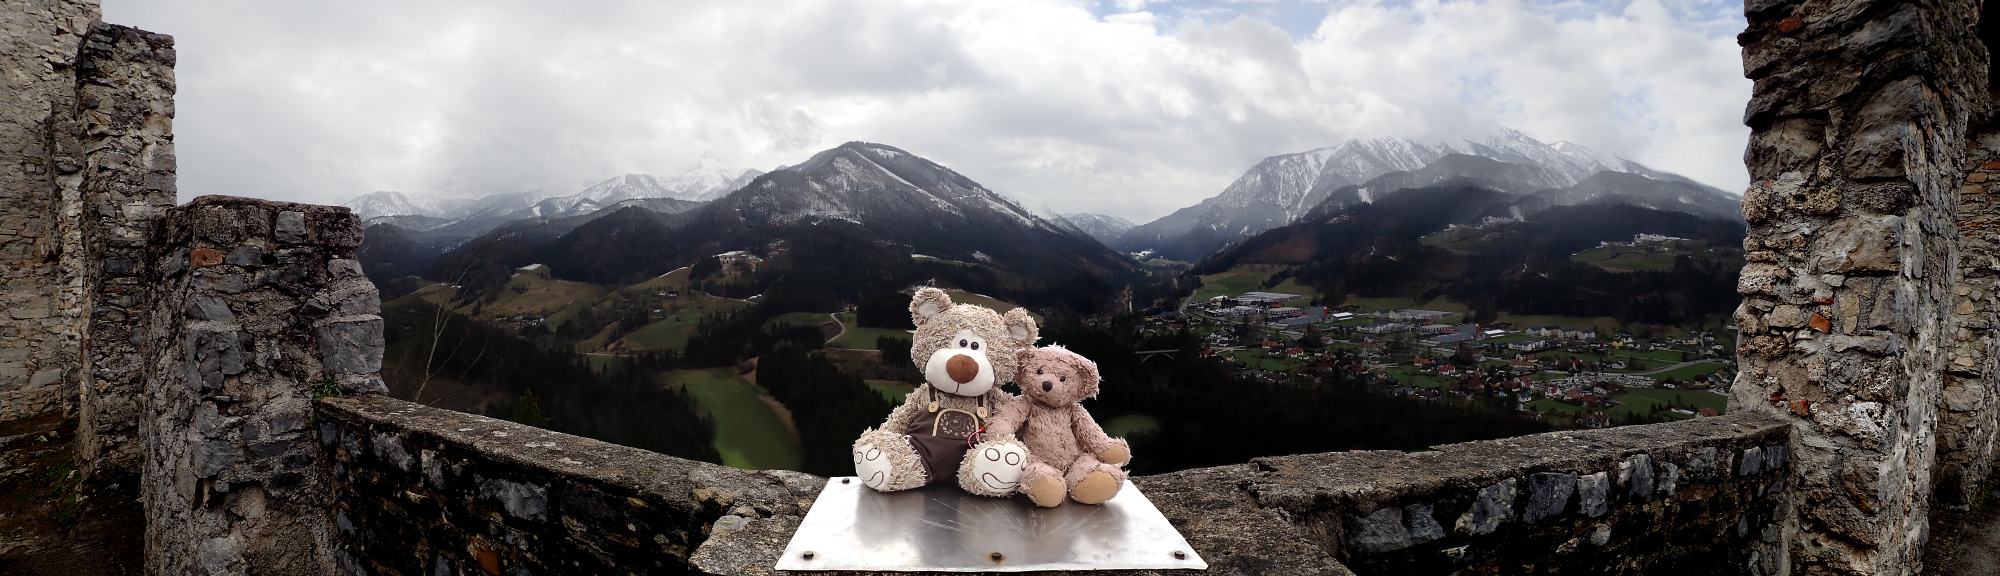 Teddy Land: Burg Gallenstein panorama